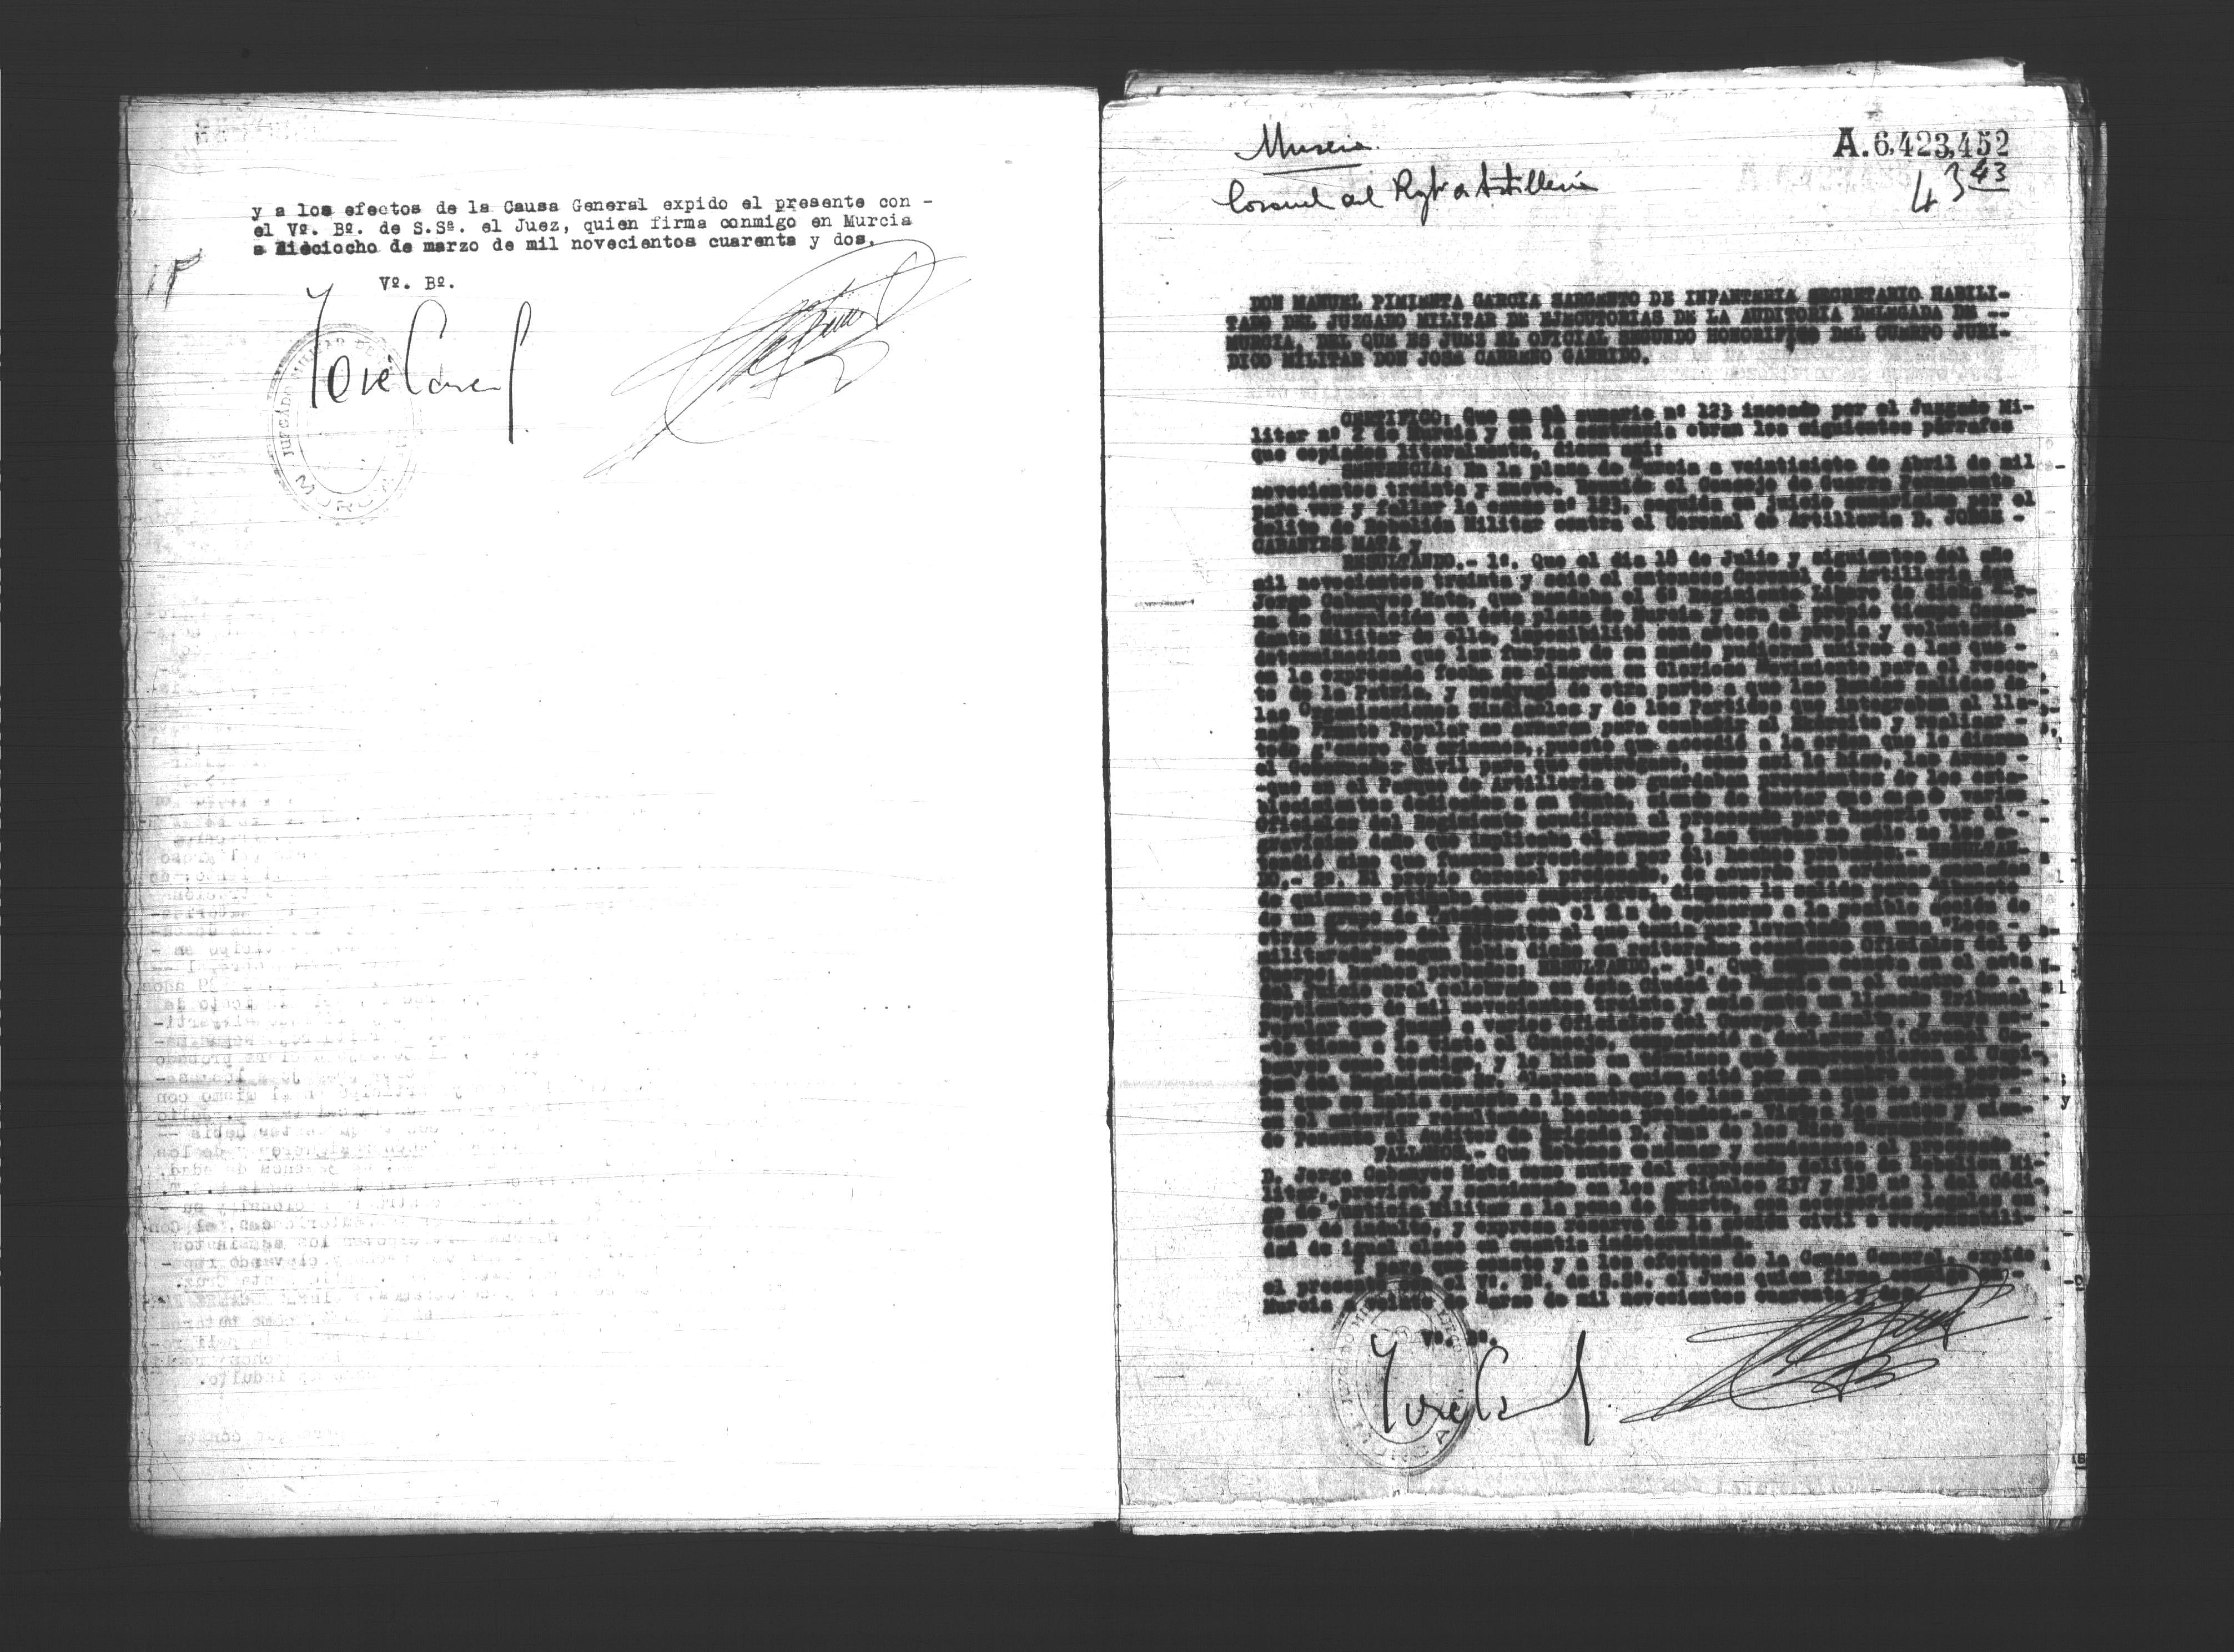 Certificado de la sentencia pronunciada contra el coronel de artillería Jorge Cabanyes Mata, causa 123, el 27 de abril de 1939.